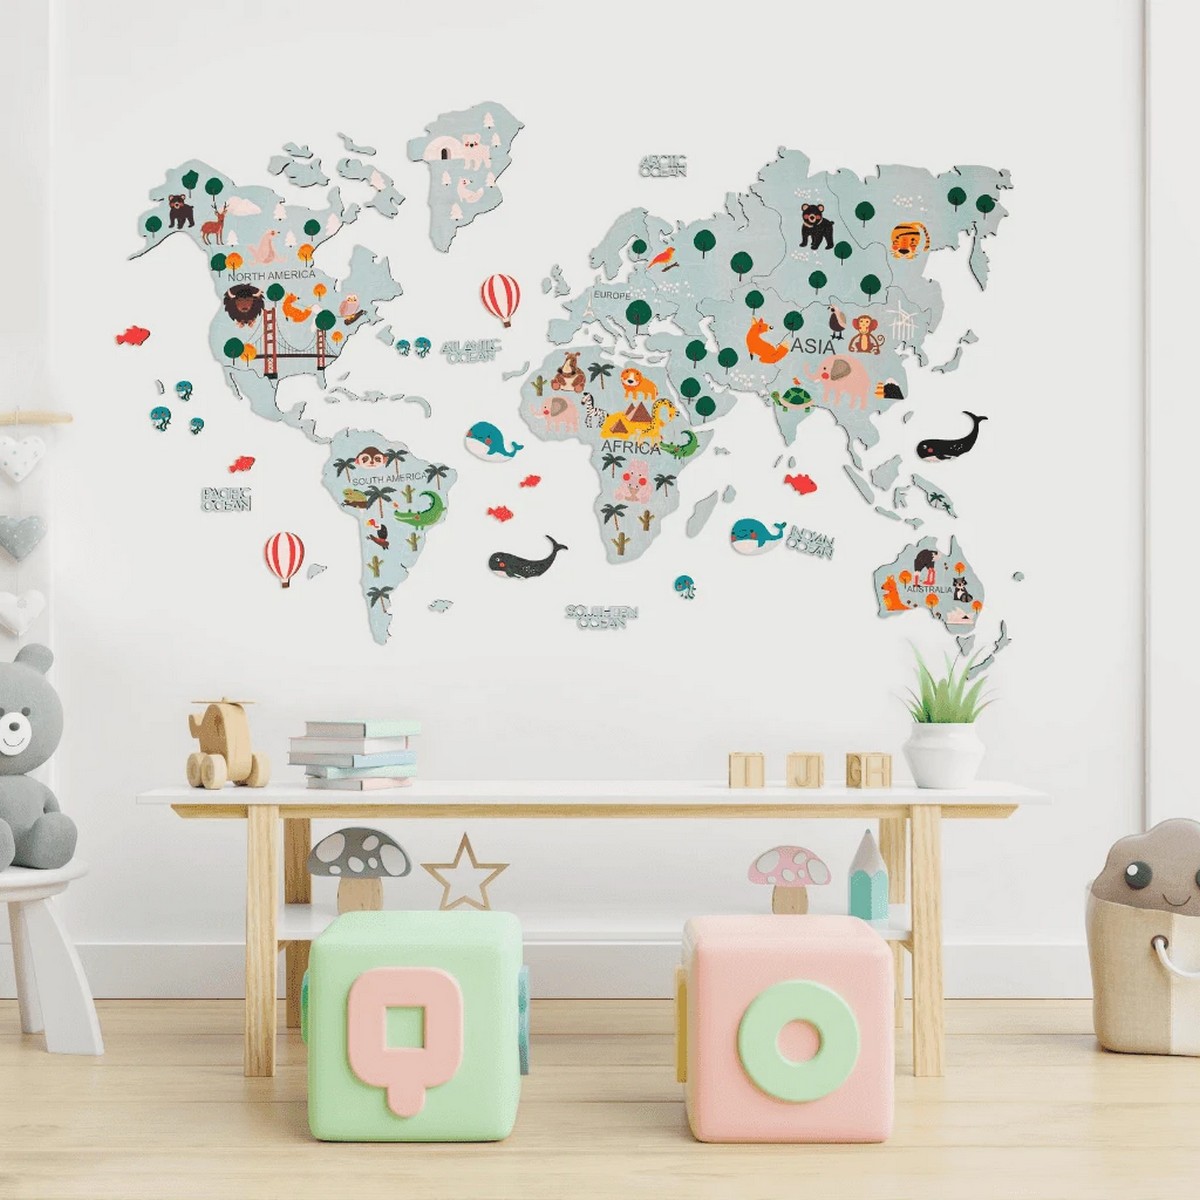 barns världskarta på väggen